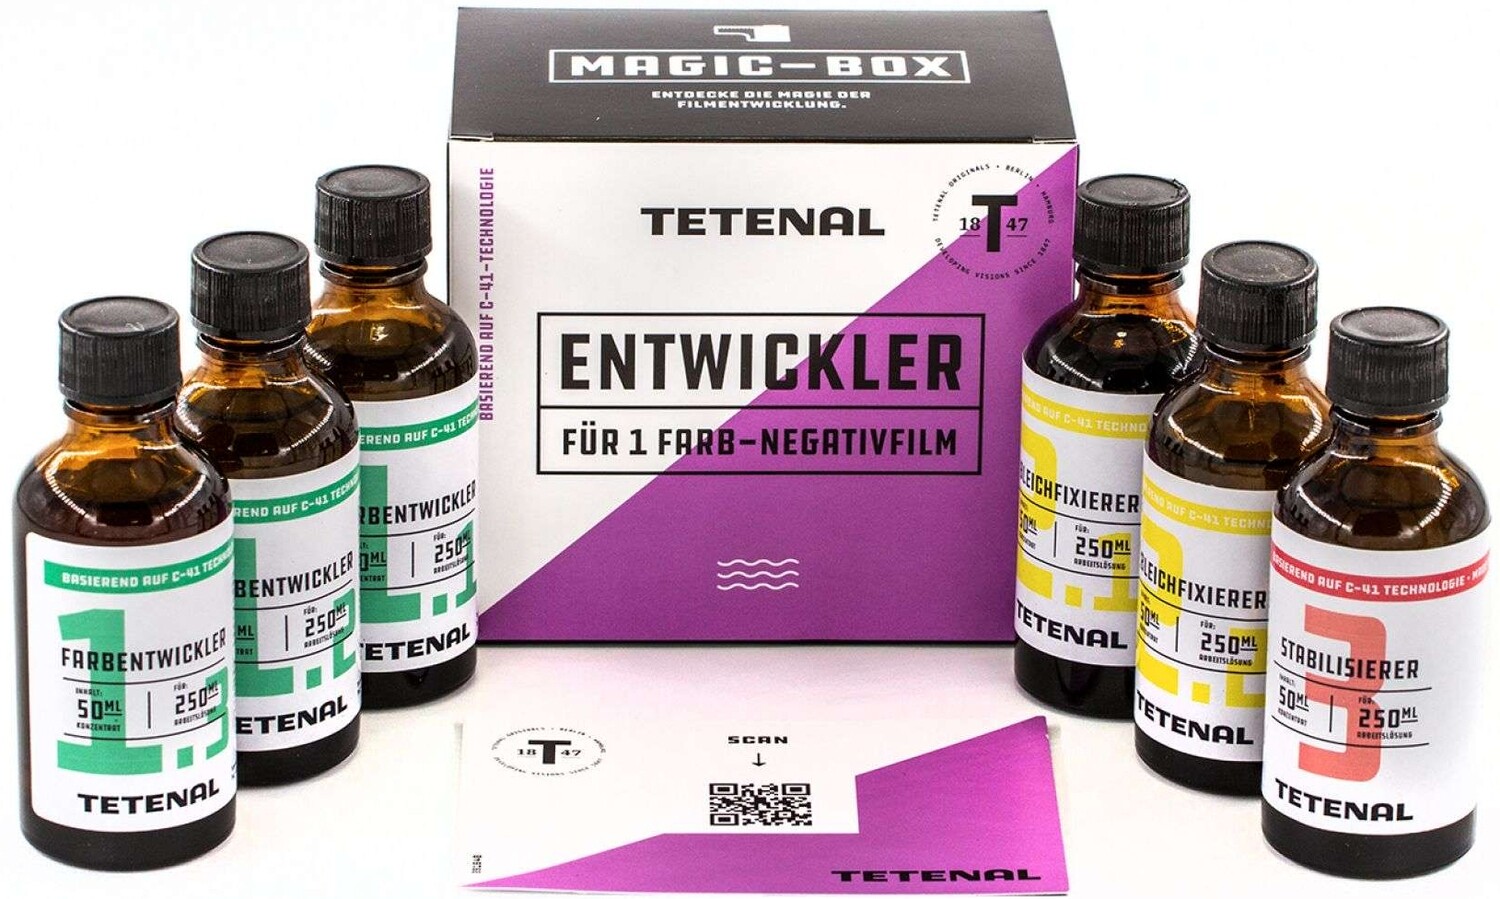 TETENAL Magic Box C-41 Entwickler Kit - Im Dezember 2022 ist die Produtionsgesellschaft von Tetenal in die wohl endgültige Insolvenz gegangen.